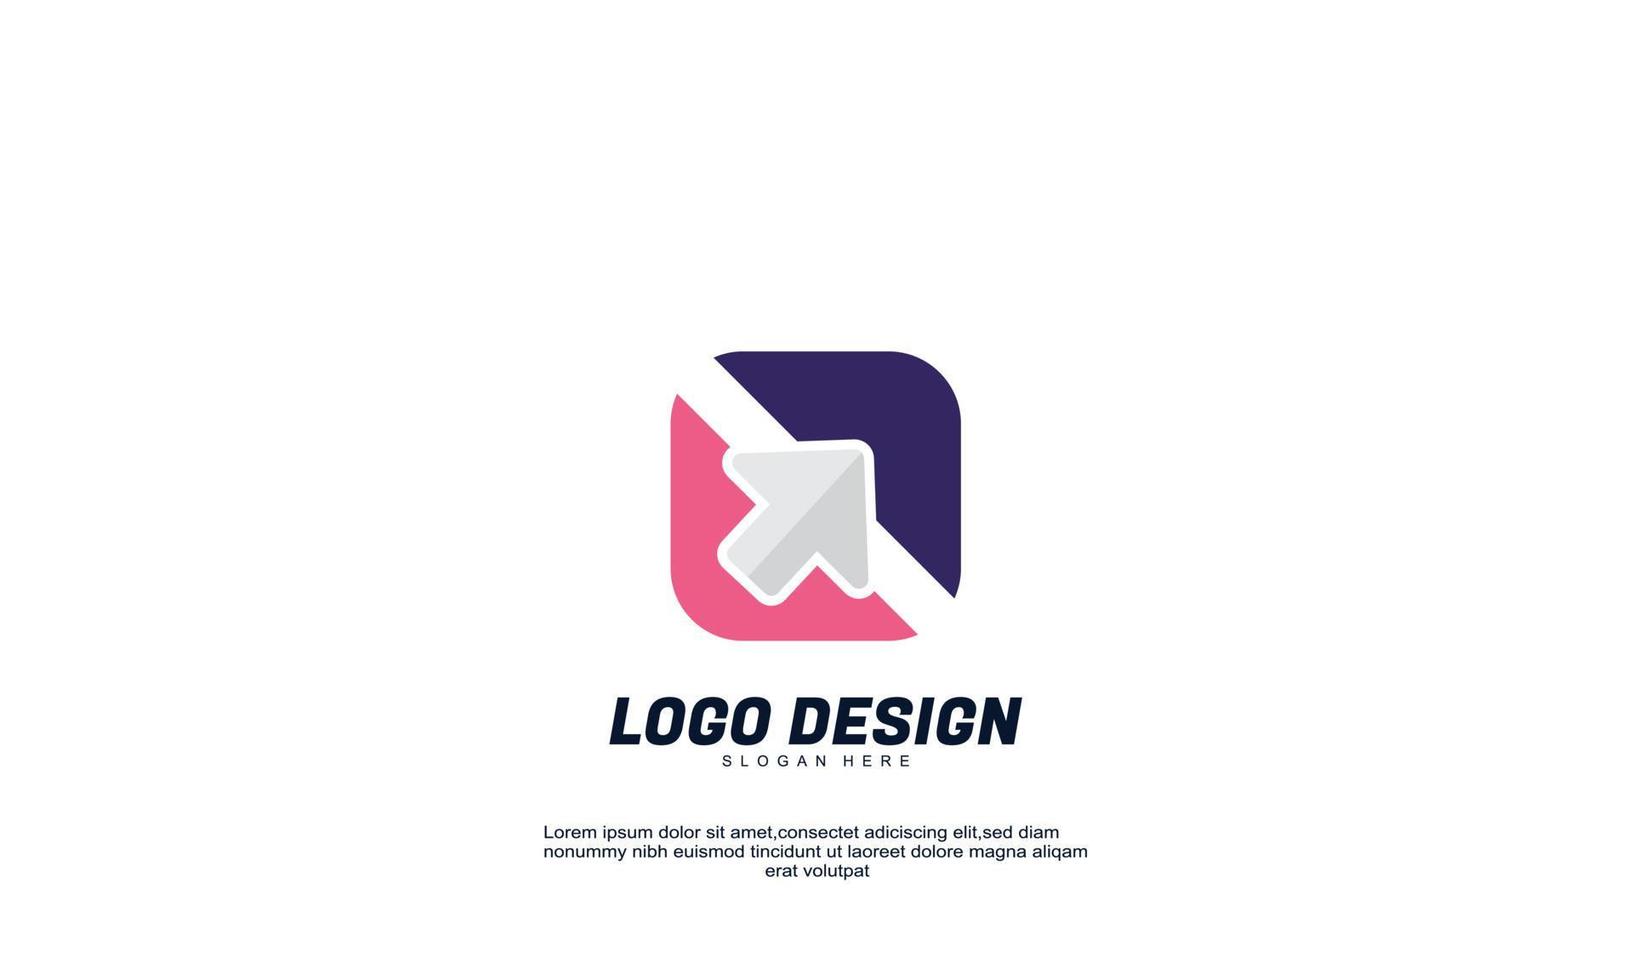 stock resumen idea creativa flecha logotipo moderno para empresa o negocio colorido con plantilla de diseño plano vector